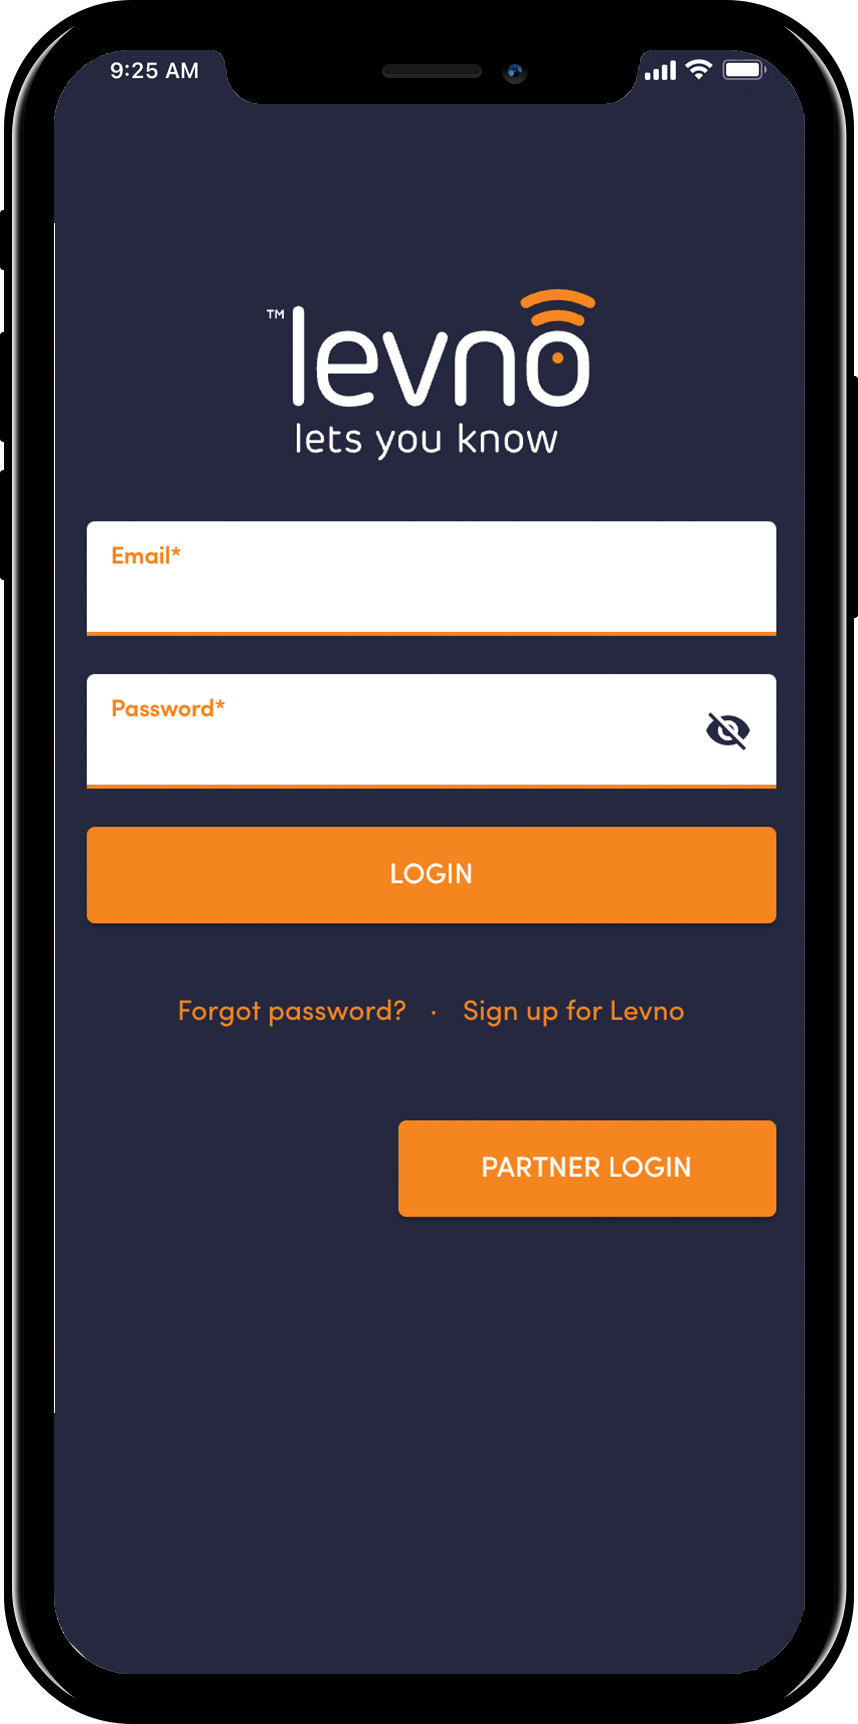 Levno App log in sceeen in phone